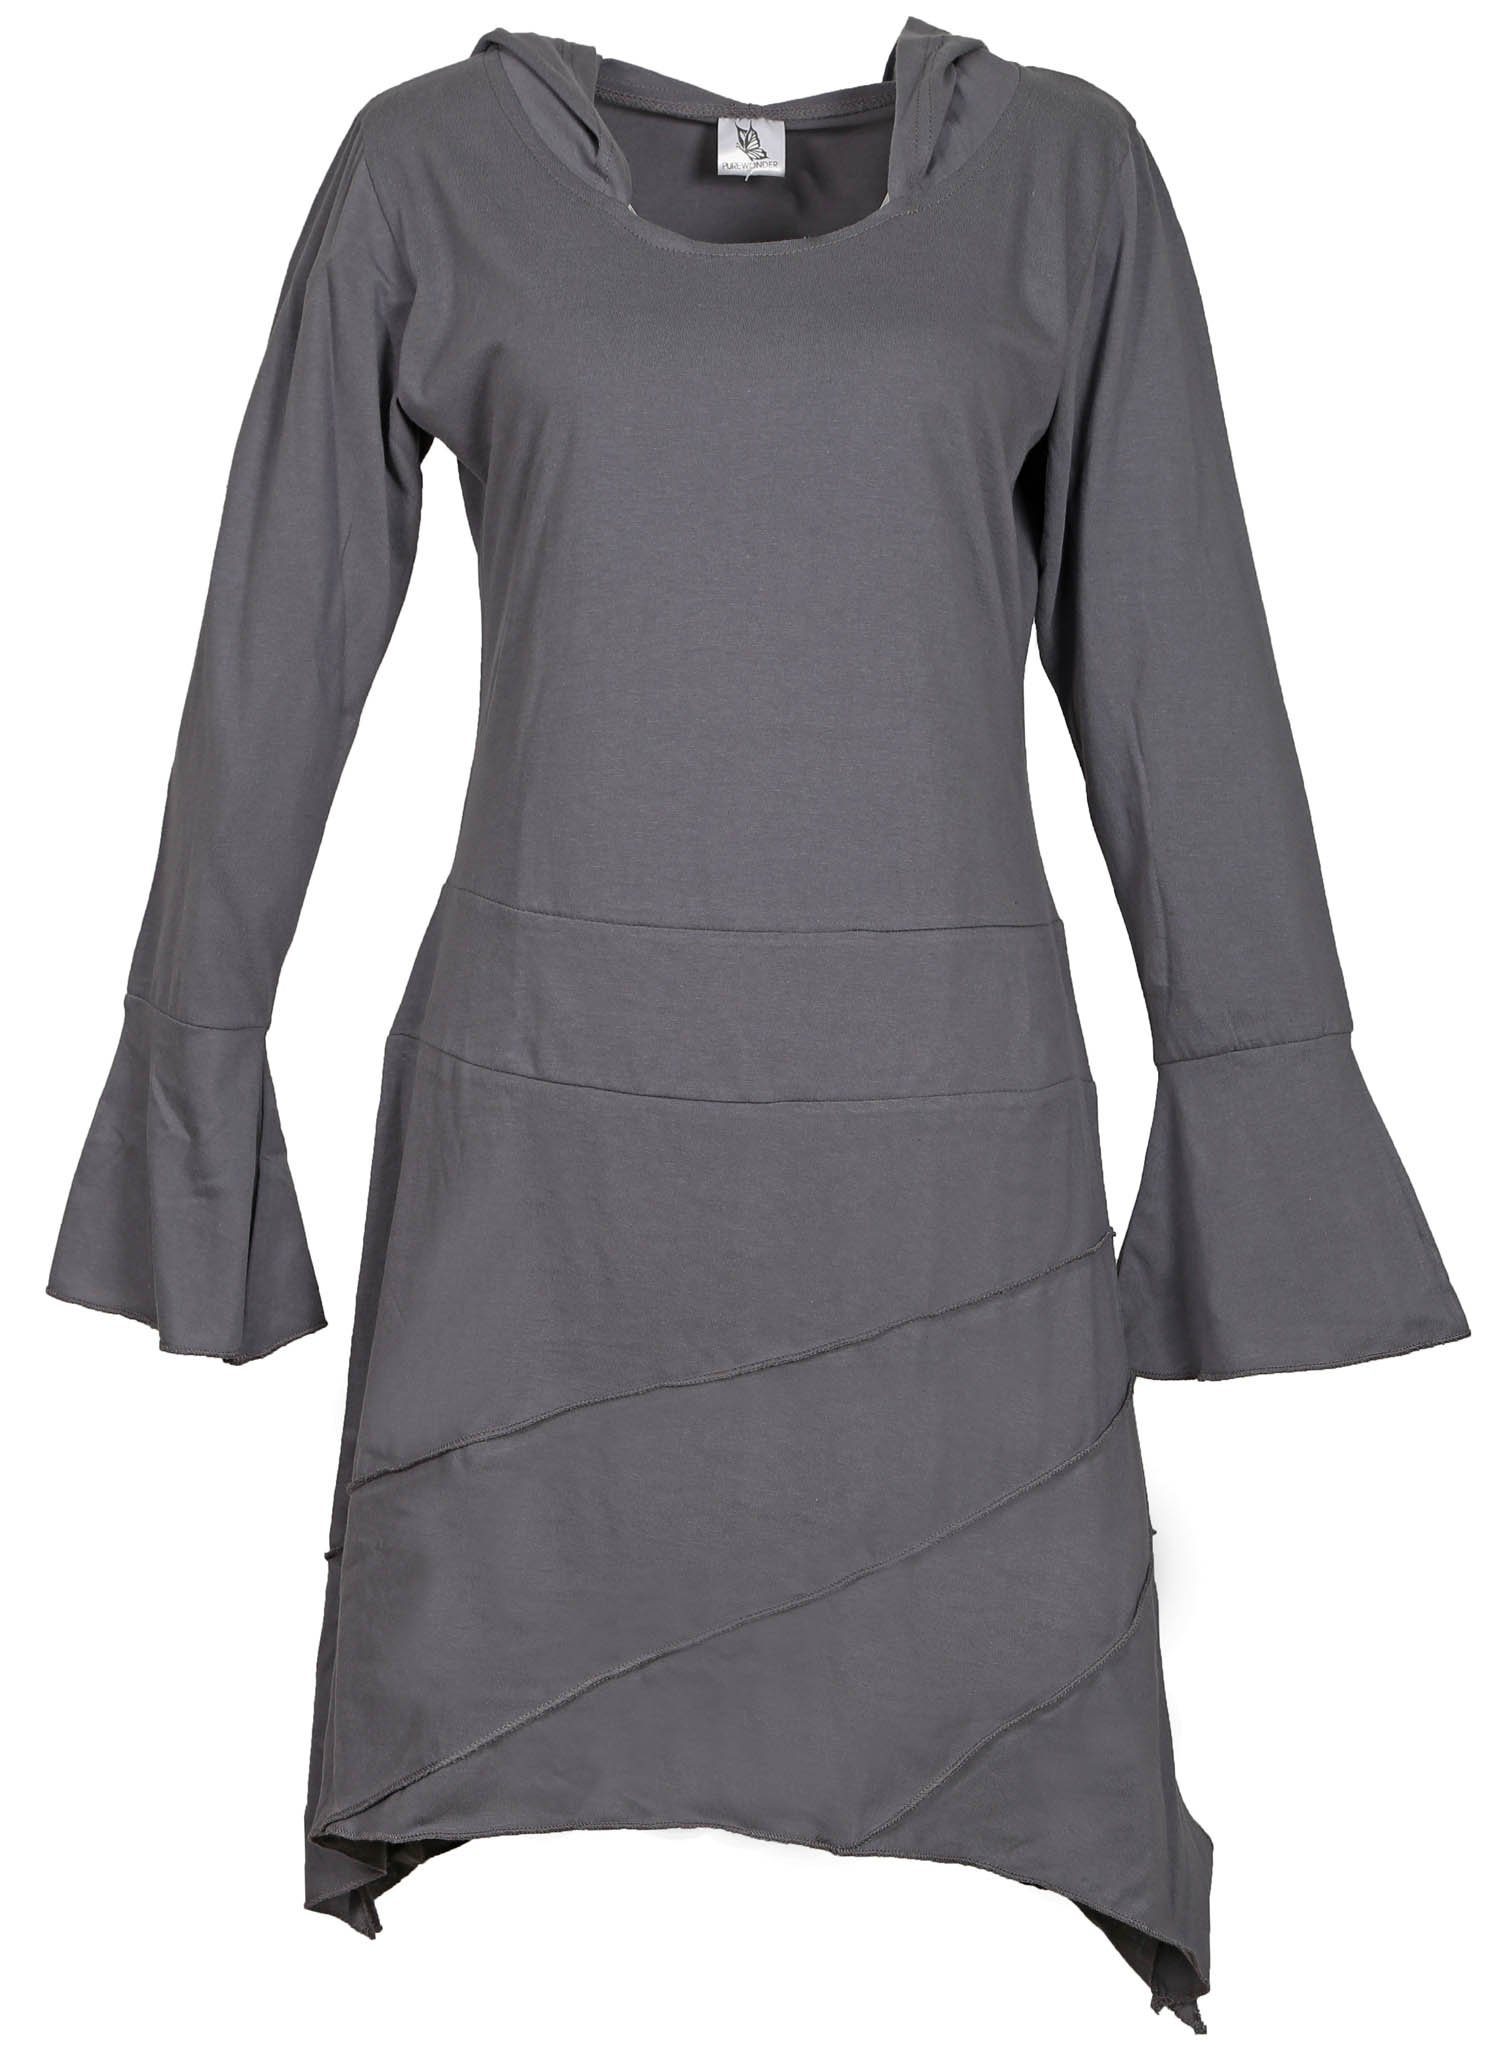 PUREWONDER Tunikakleid Sommerkleid aus leichtem Jersey Tunika mit Zipfelkapuze Grau | Blusenkleider